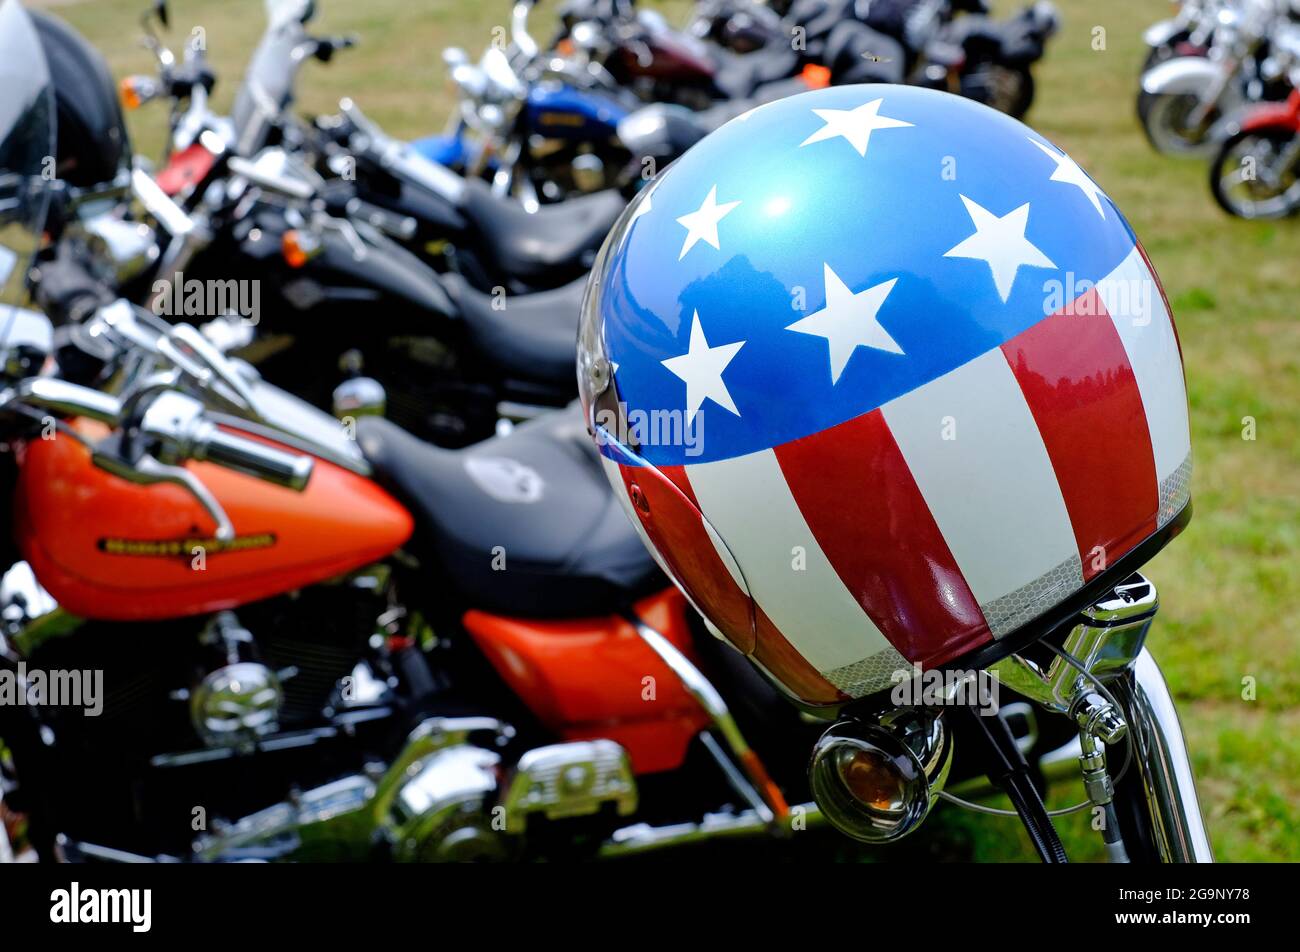 drapeau américain, casque d'accident de style cavalier facile sur harley davidson motorcycle, norfolk, angleterre Banque D'Images